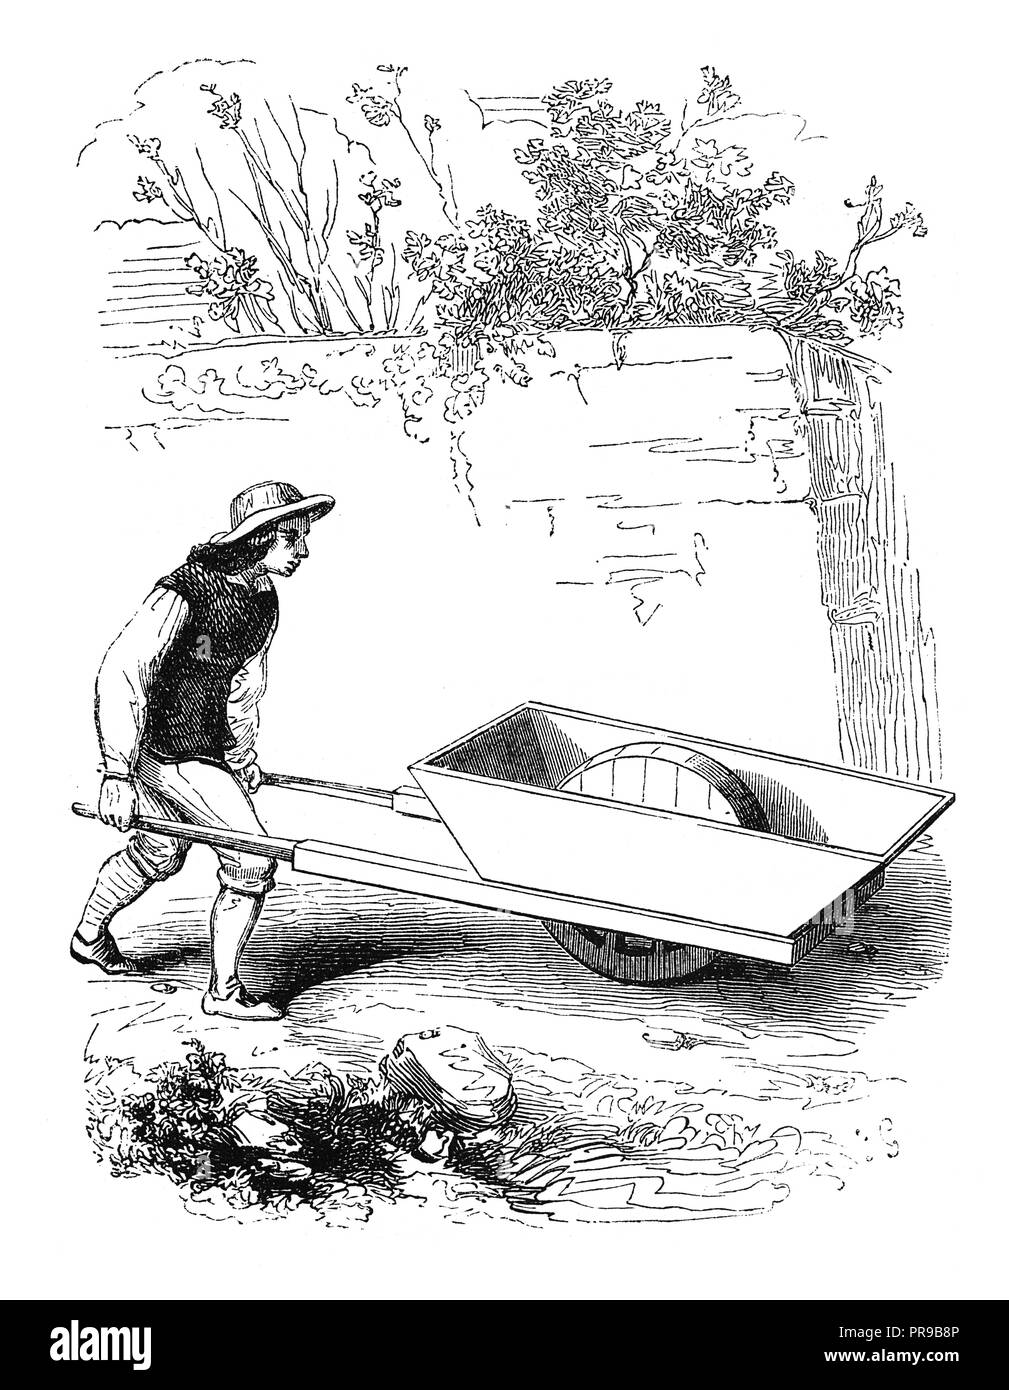 19 Abbildung: ein 1-Rad Schubkarren, erfunden von Blaise Pascal. Nach egraving von Grollier de Serviere. Original artwork veröffentlicht. Stockfoto